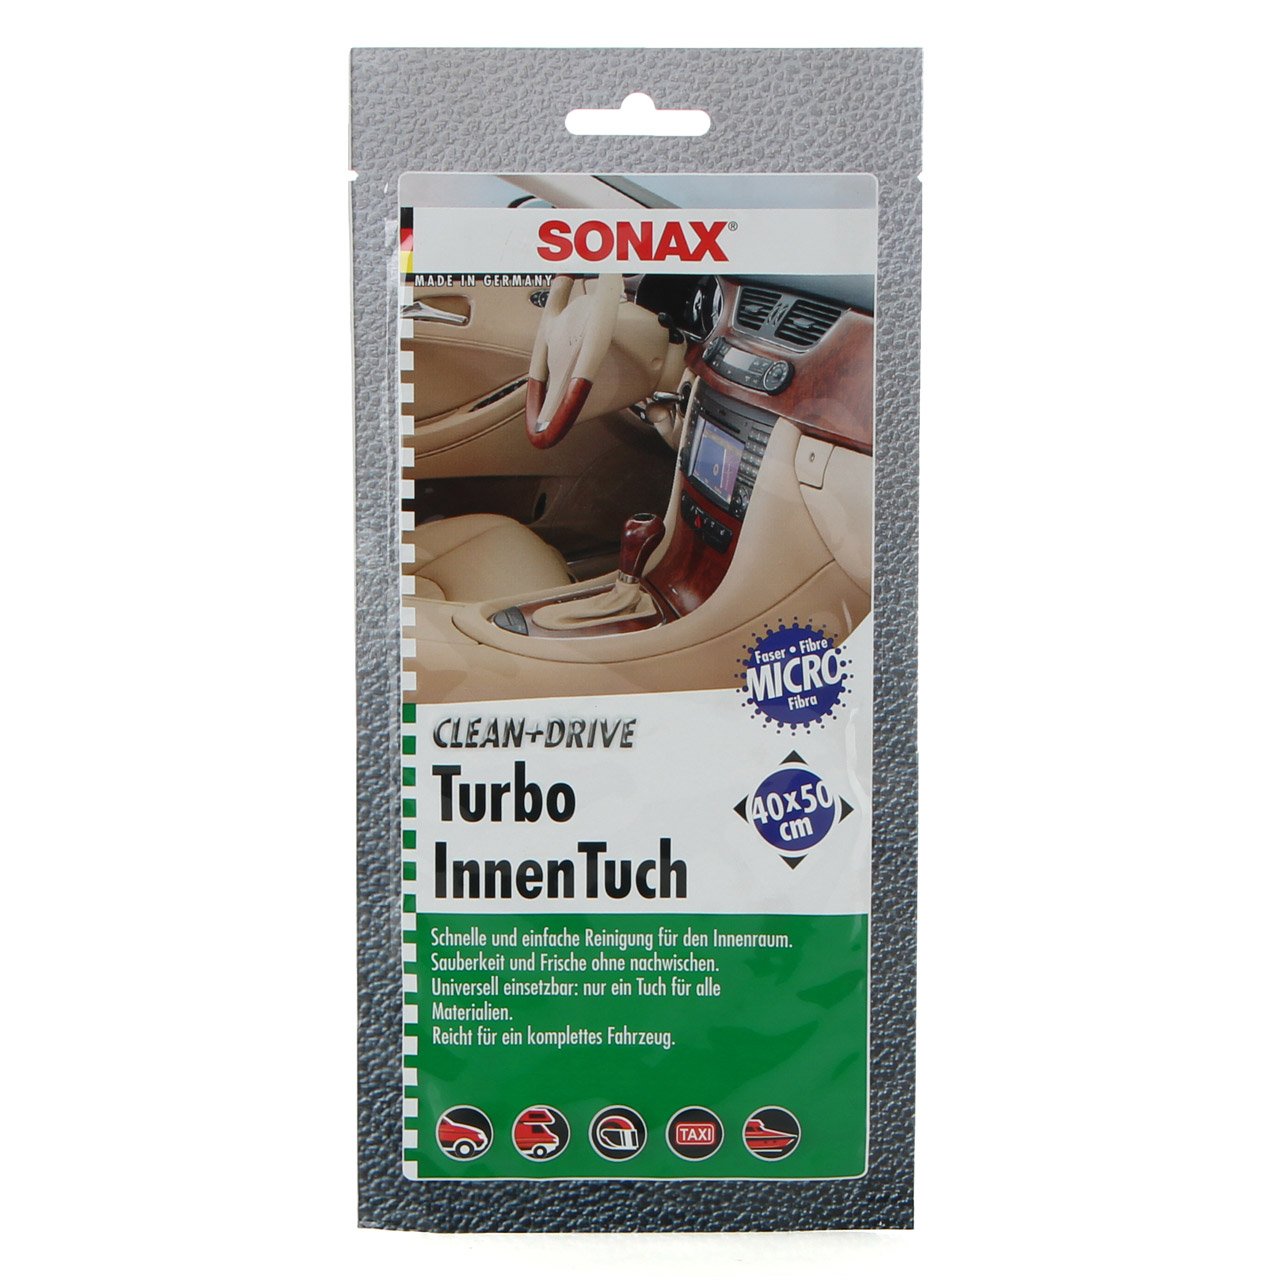 24x SONAX 413000 Turbo InnenTuch CLEAN&DRIVE Microfaser-Tuch 40x50cm